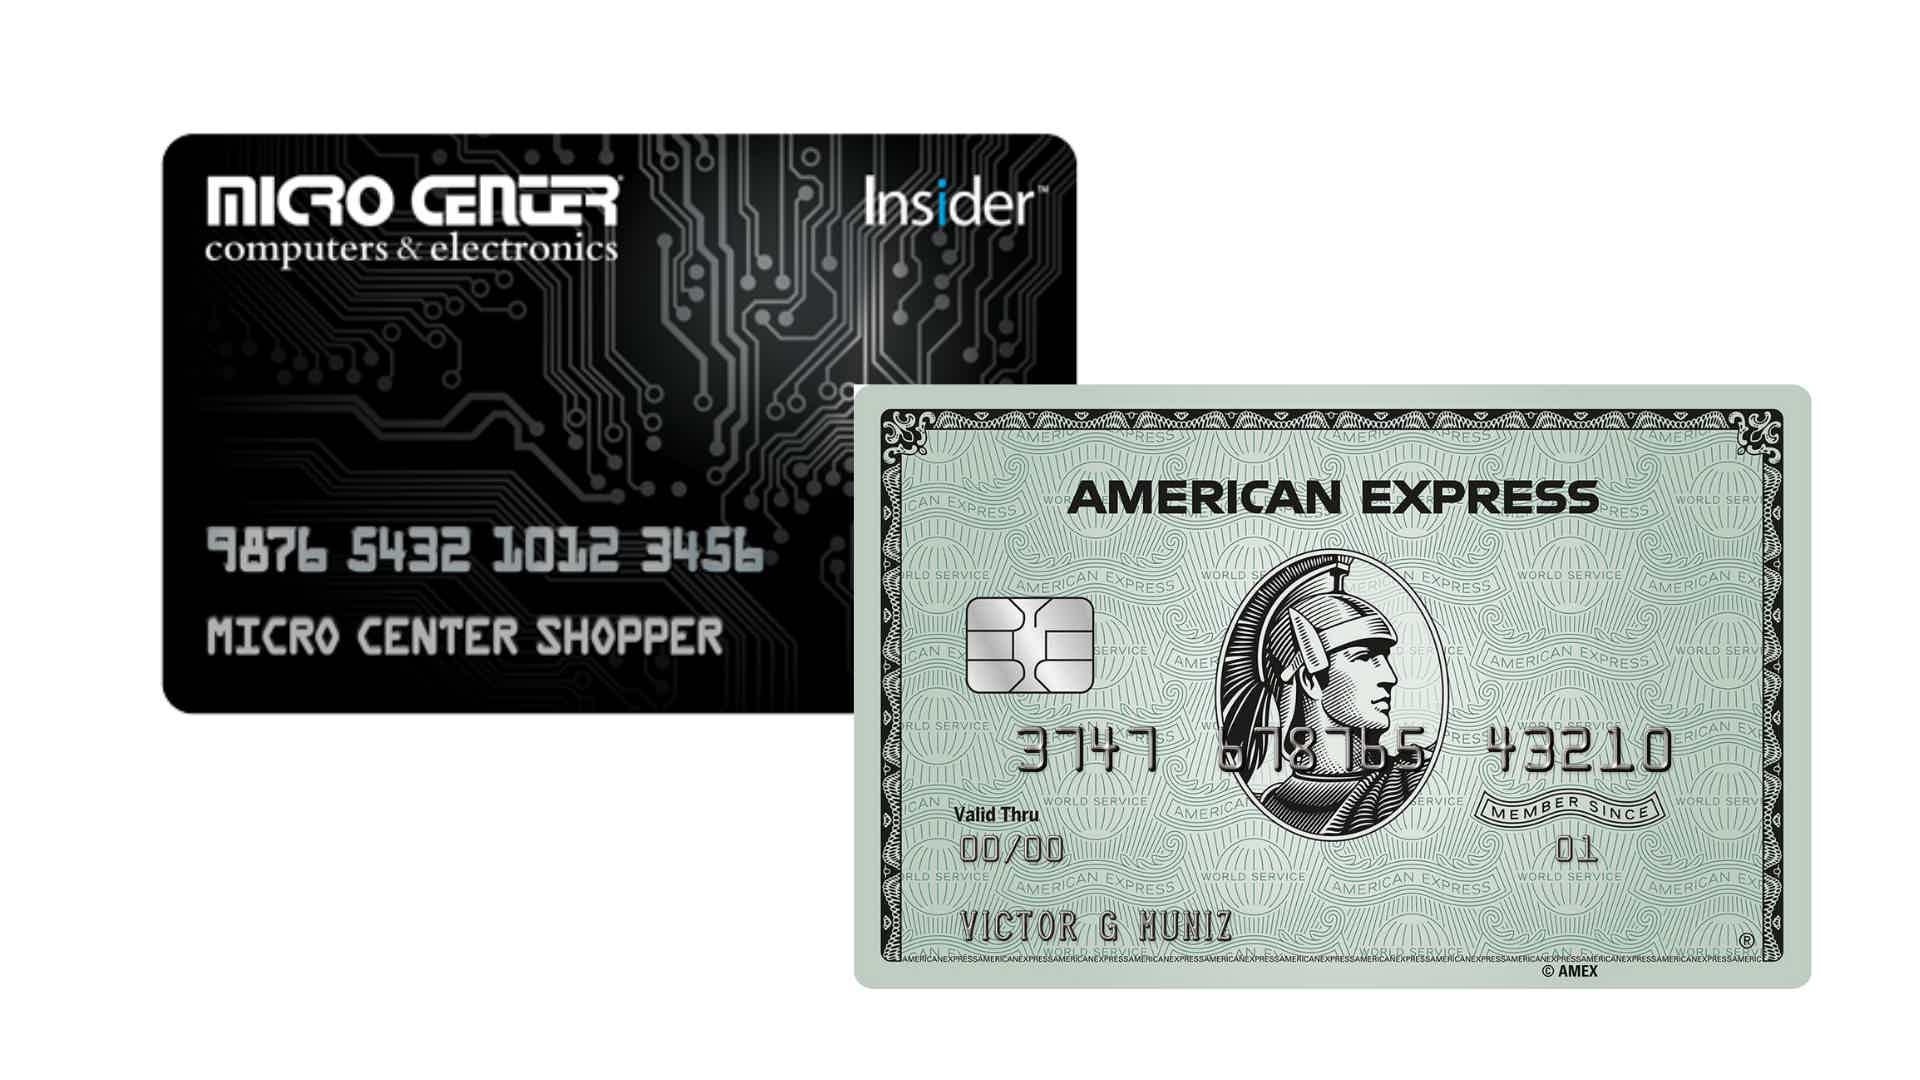 Mas, afinal, o cartão de crédito American Express ou cartão de crédito Microcenter? Fonte: Microcenter / Amex.